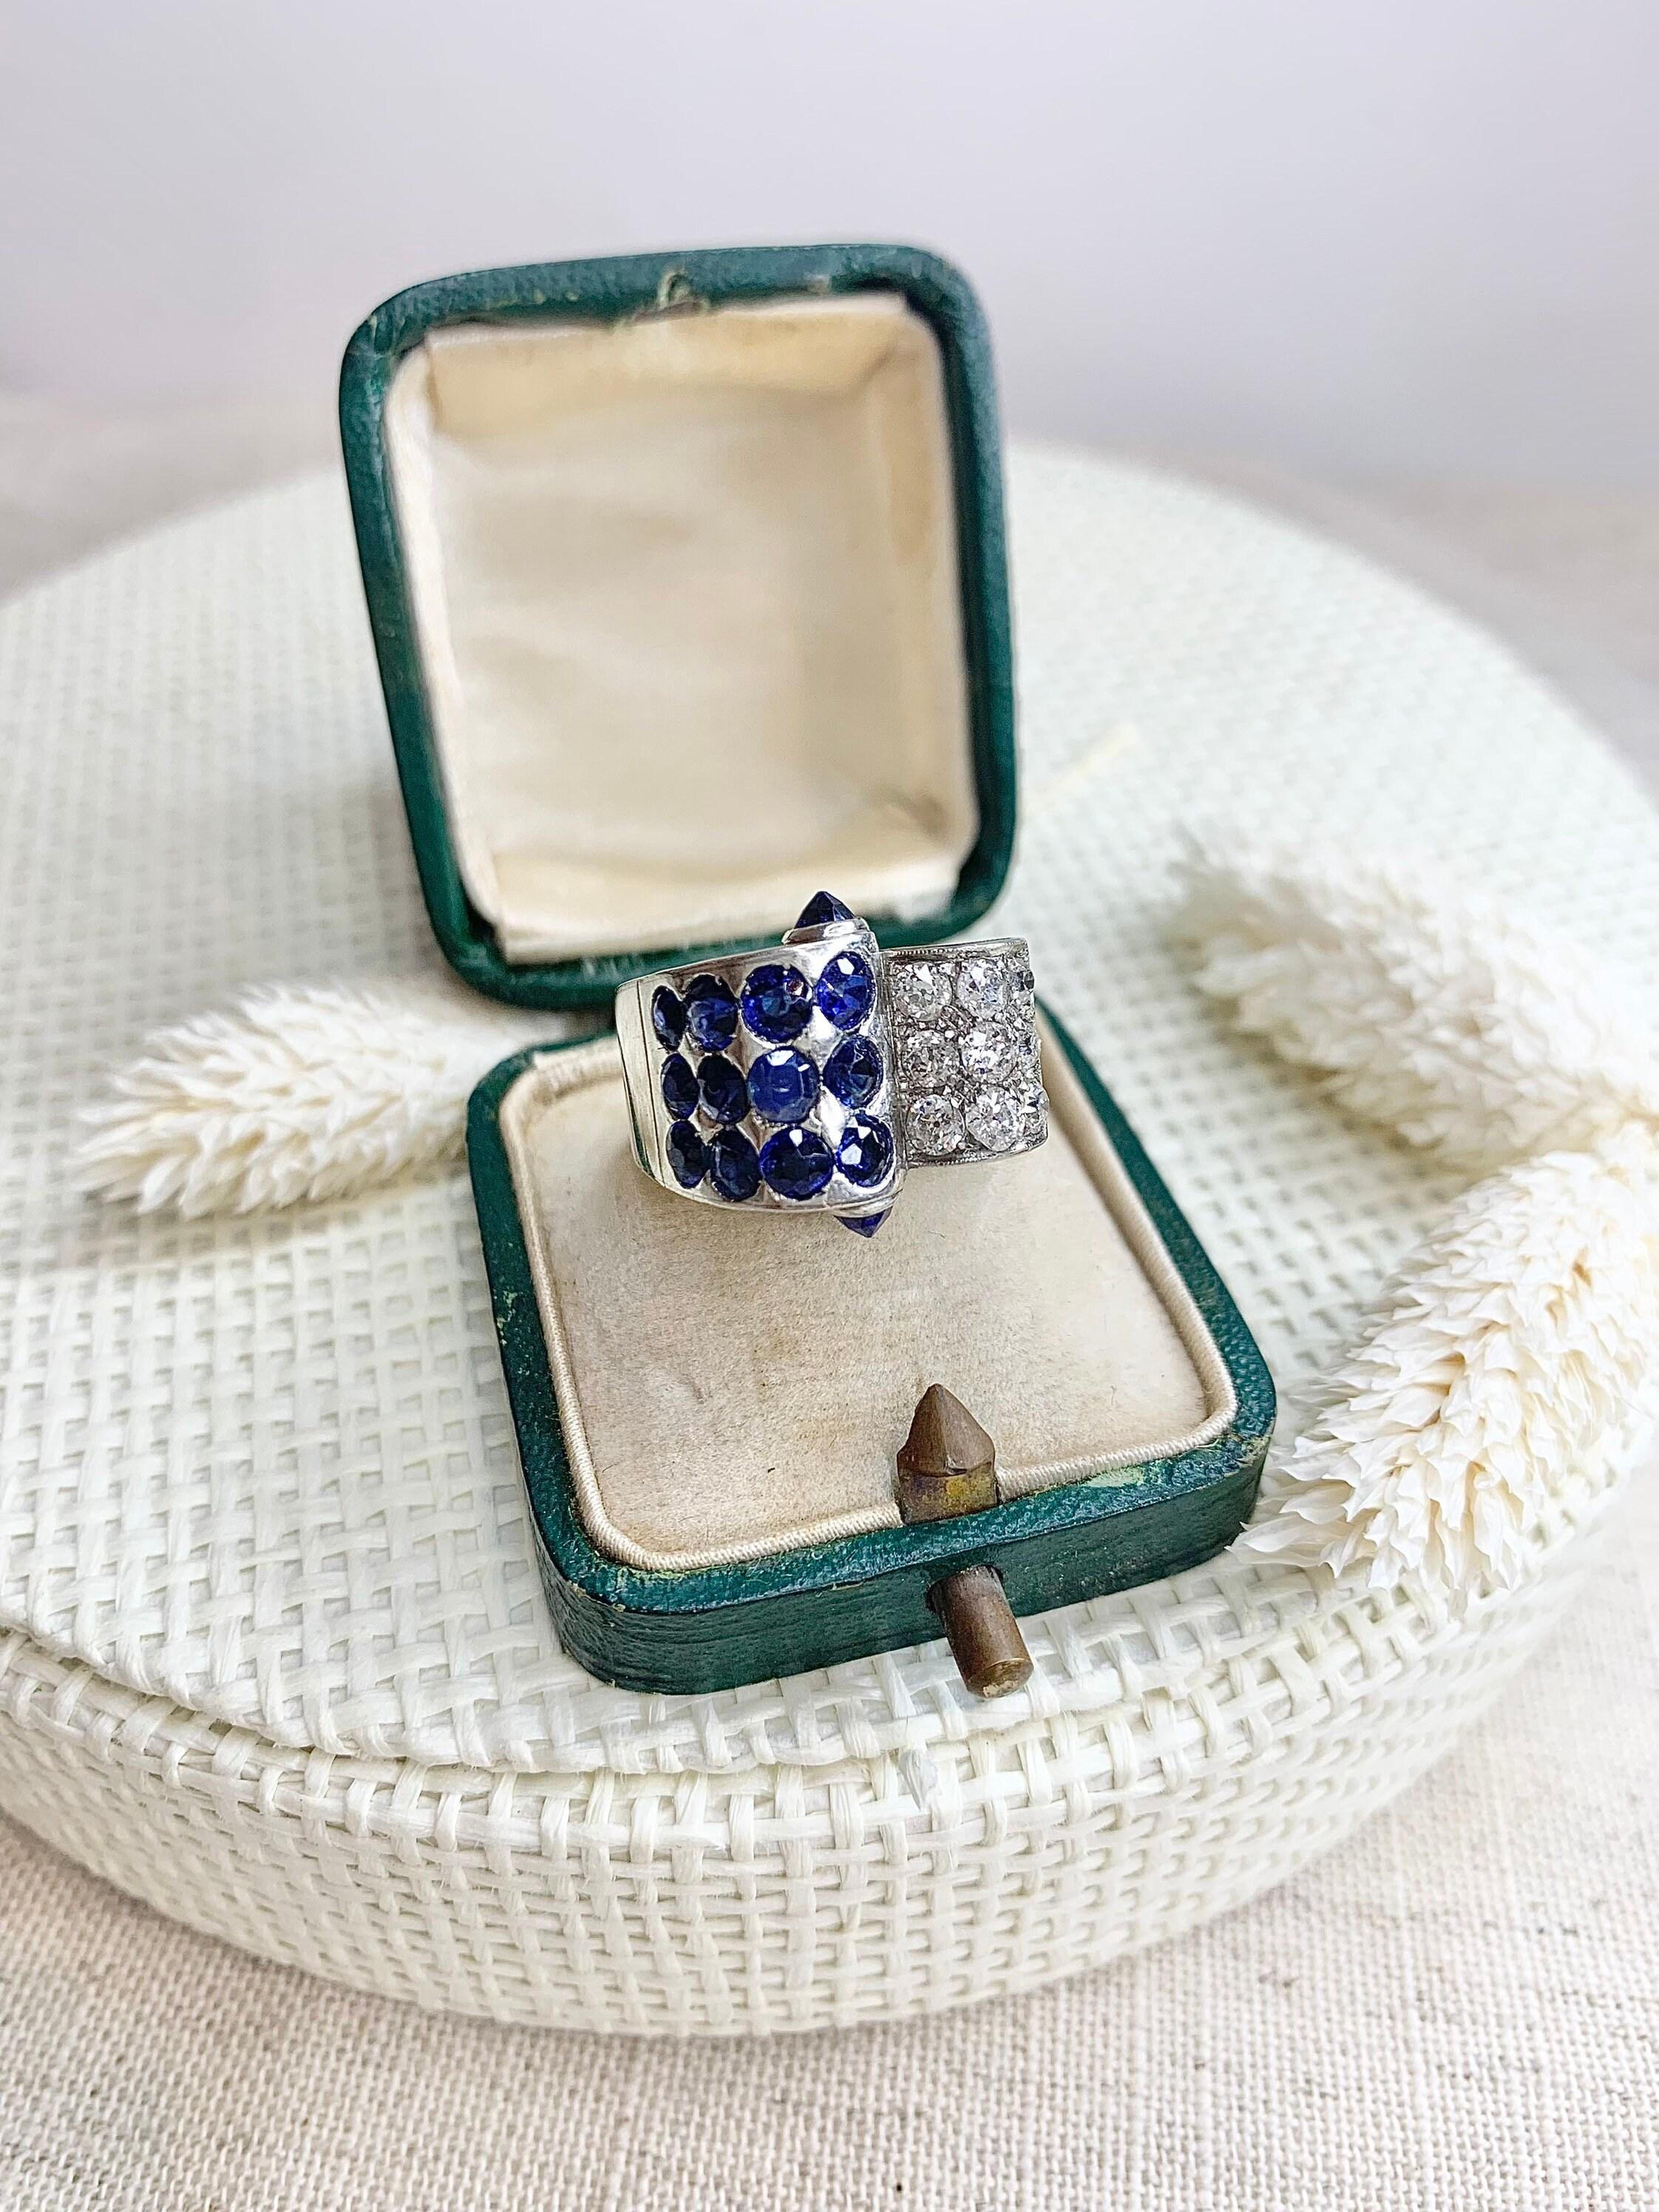 Vintage Saphir & Diamant Cocktail Ring 

Platin 

CIRCA 1940er Jahre 

Dieser Ring hat auf jeden Fall den Wow-Faktor!
Set mit wunderschönen blauen Saphiren und fabelhaften Diamanten im Altschliff, das Detail und Design ist so originell. Dieser Ring